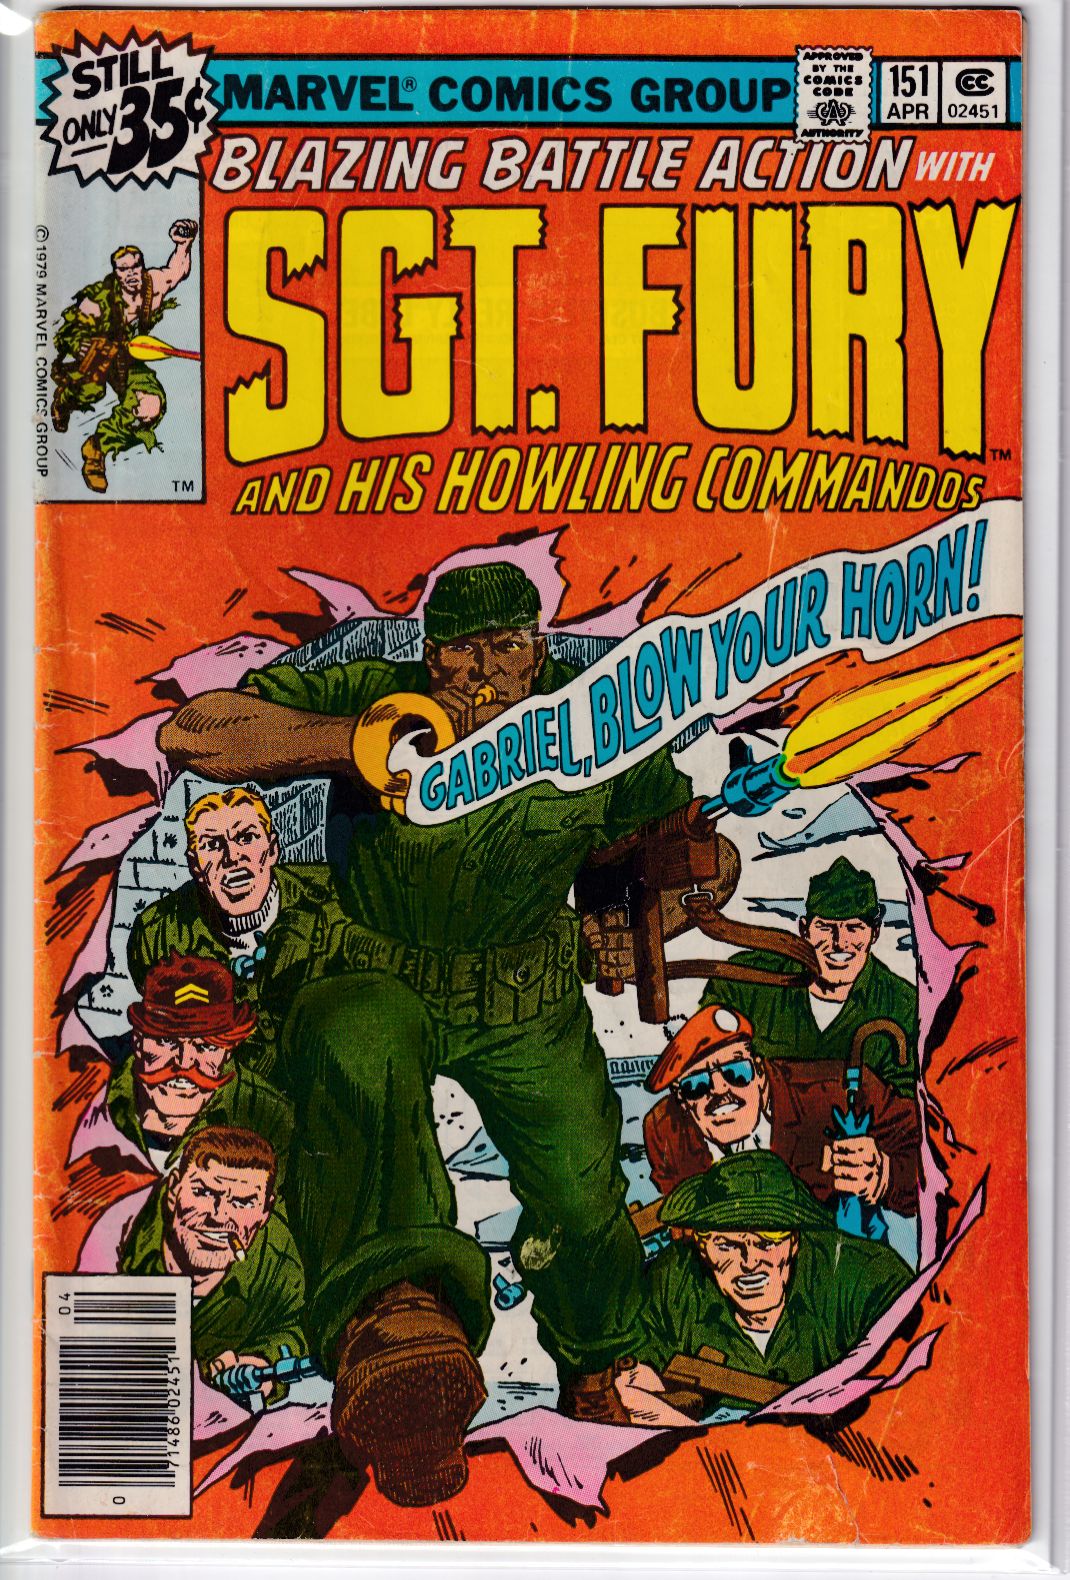 SGT. FURY #151 VG-